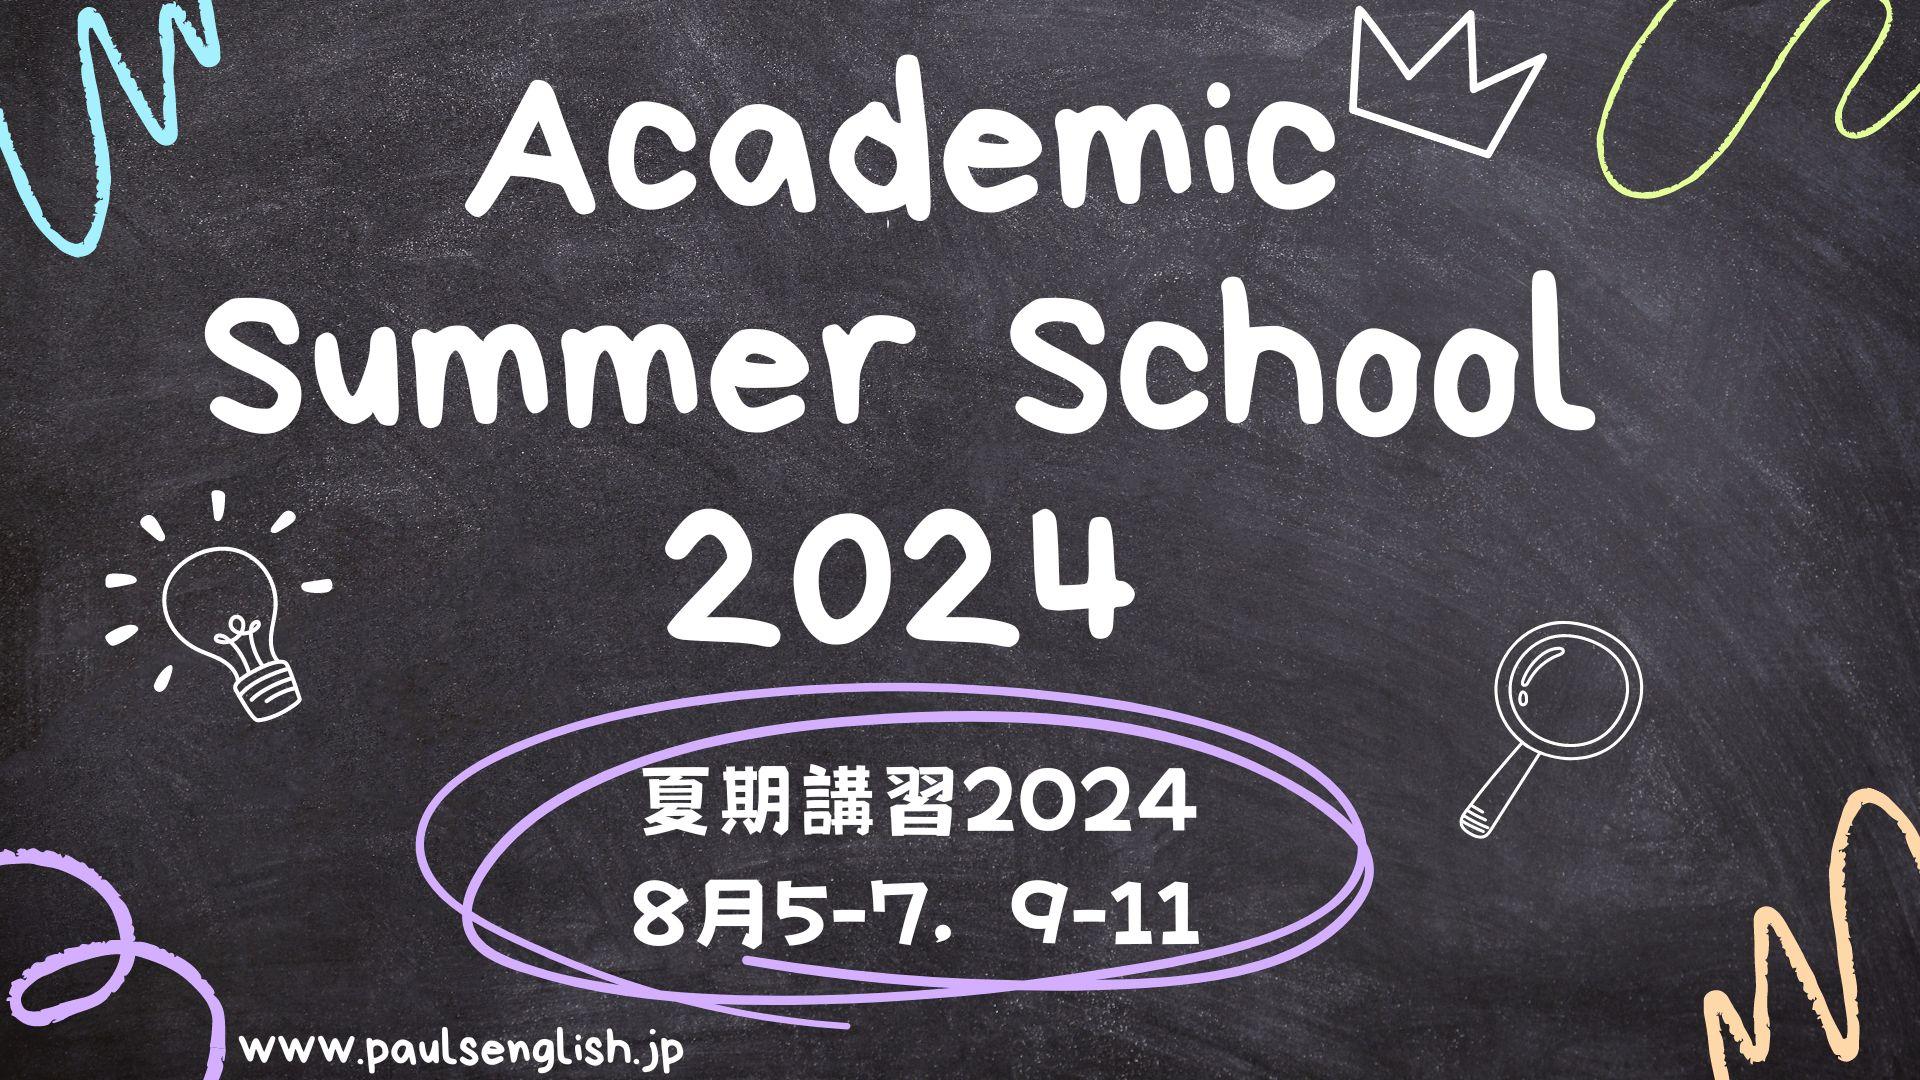 Academic Summer School 2024